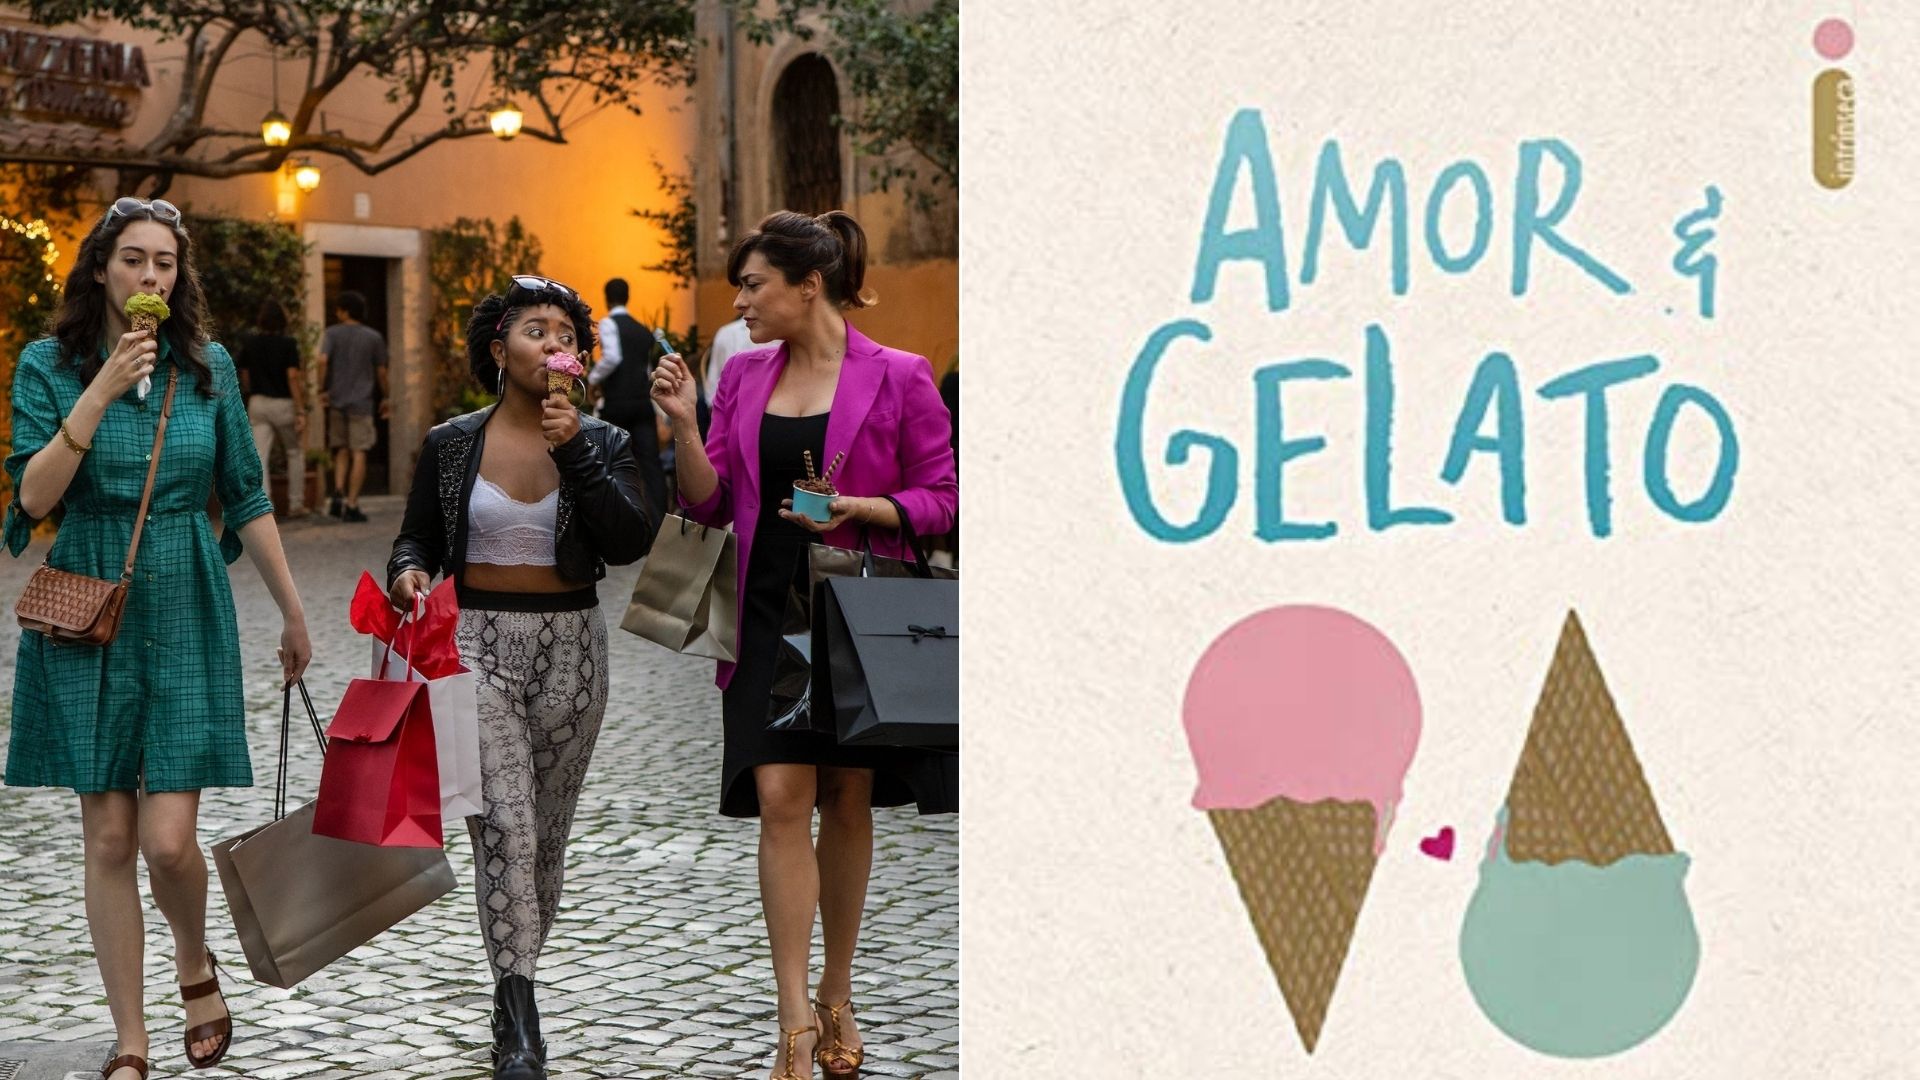 Filme baseado no romance "Amor e Gelato" ganha data de estreia